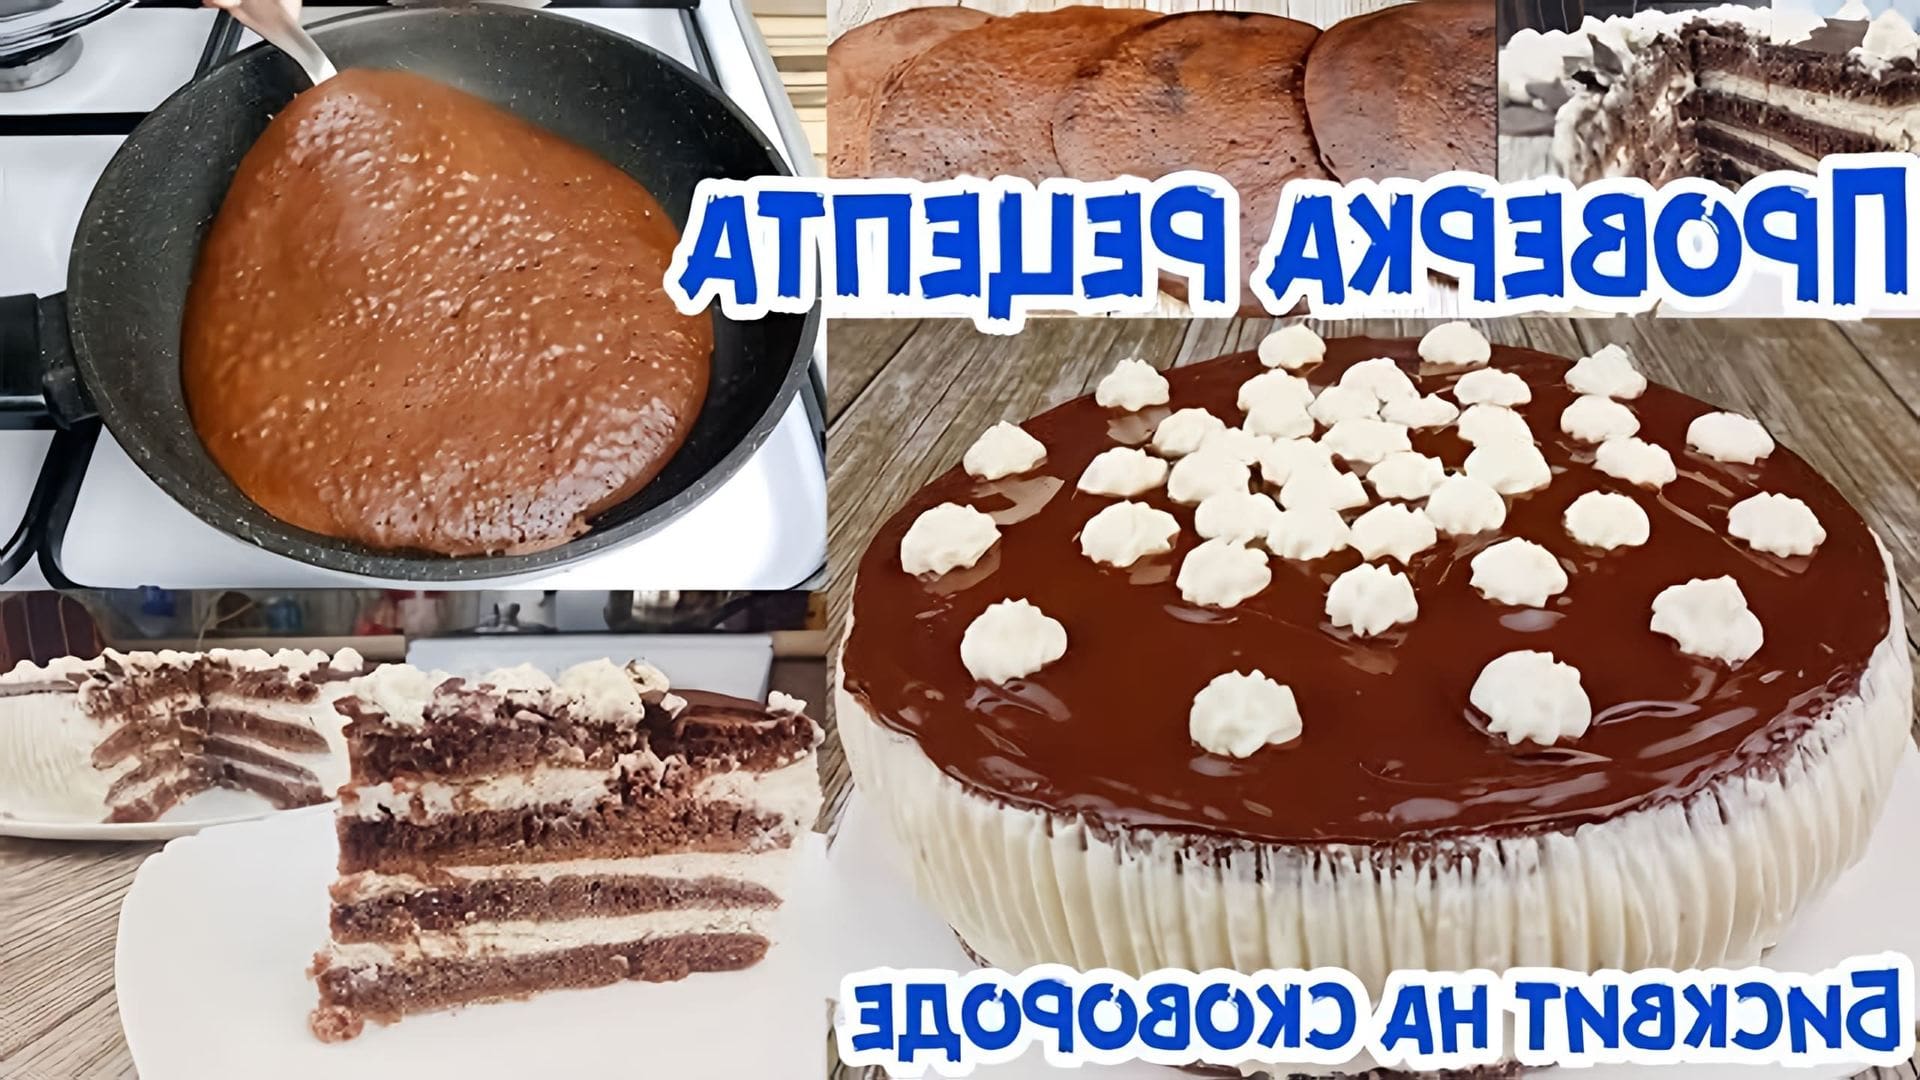 В этом видео-ролике будет продемонстрирован рецепт приготовления шикарного торта всего за 30 минут